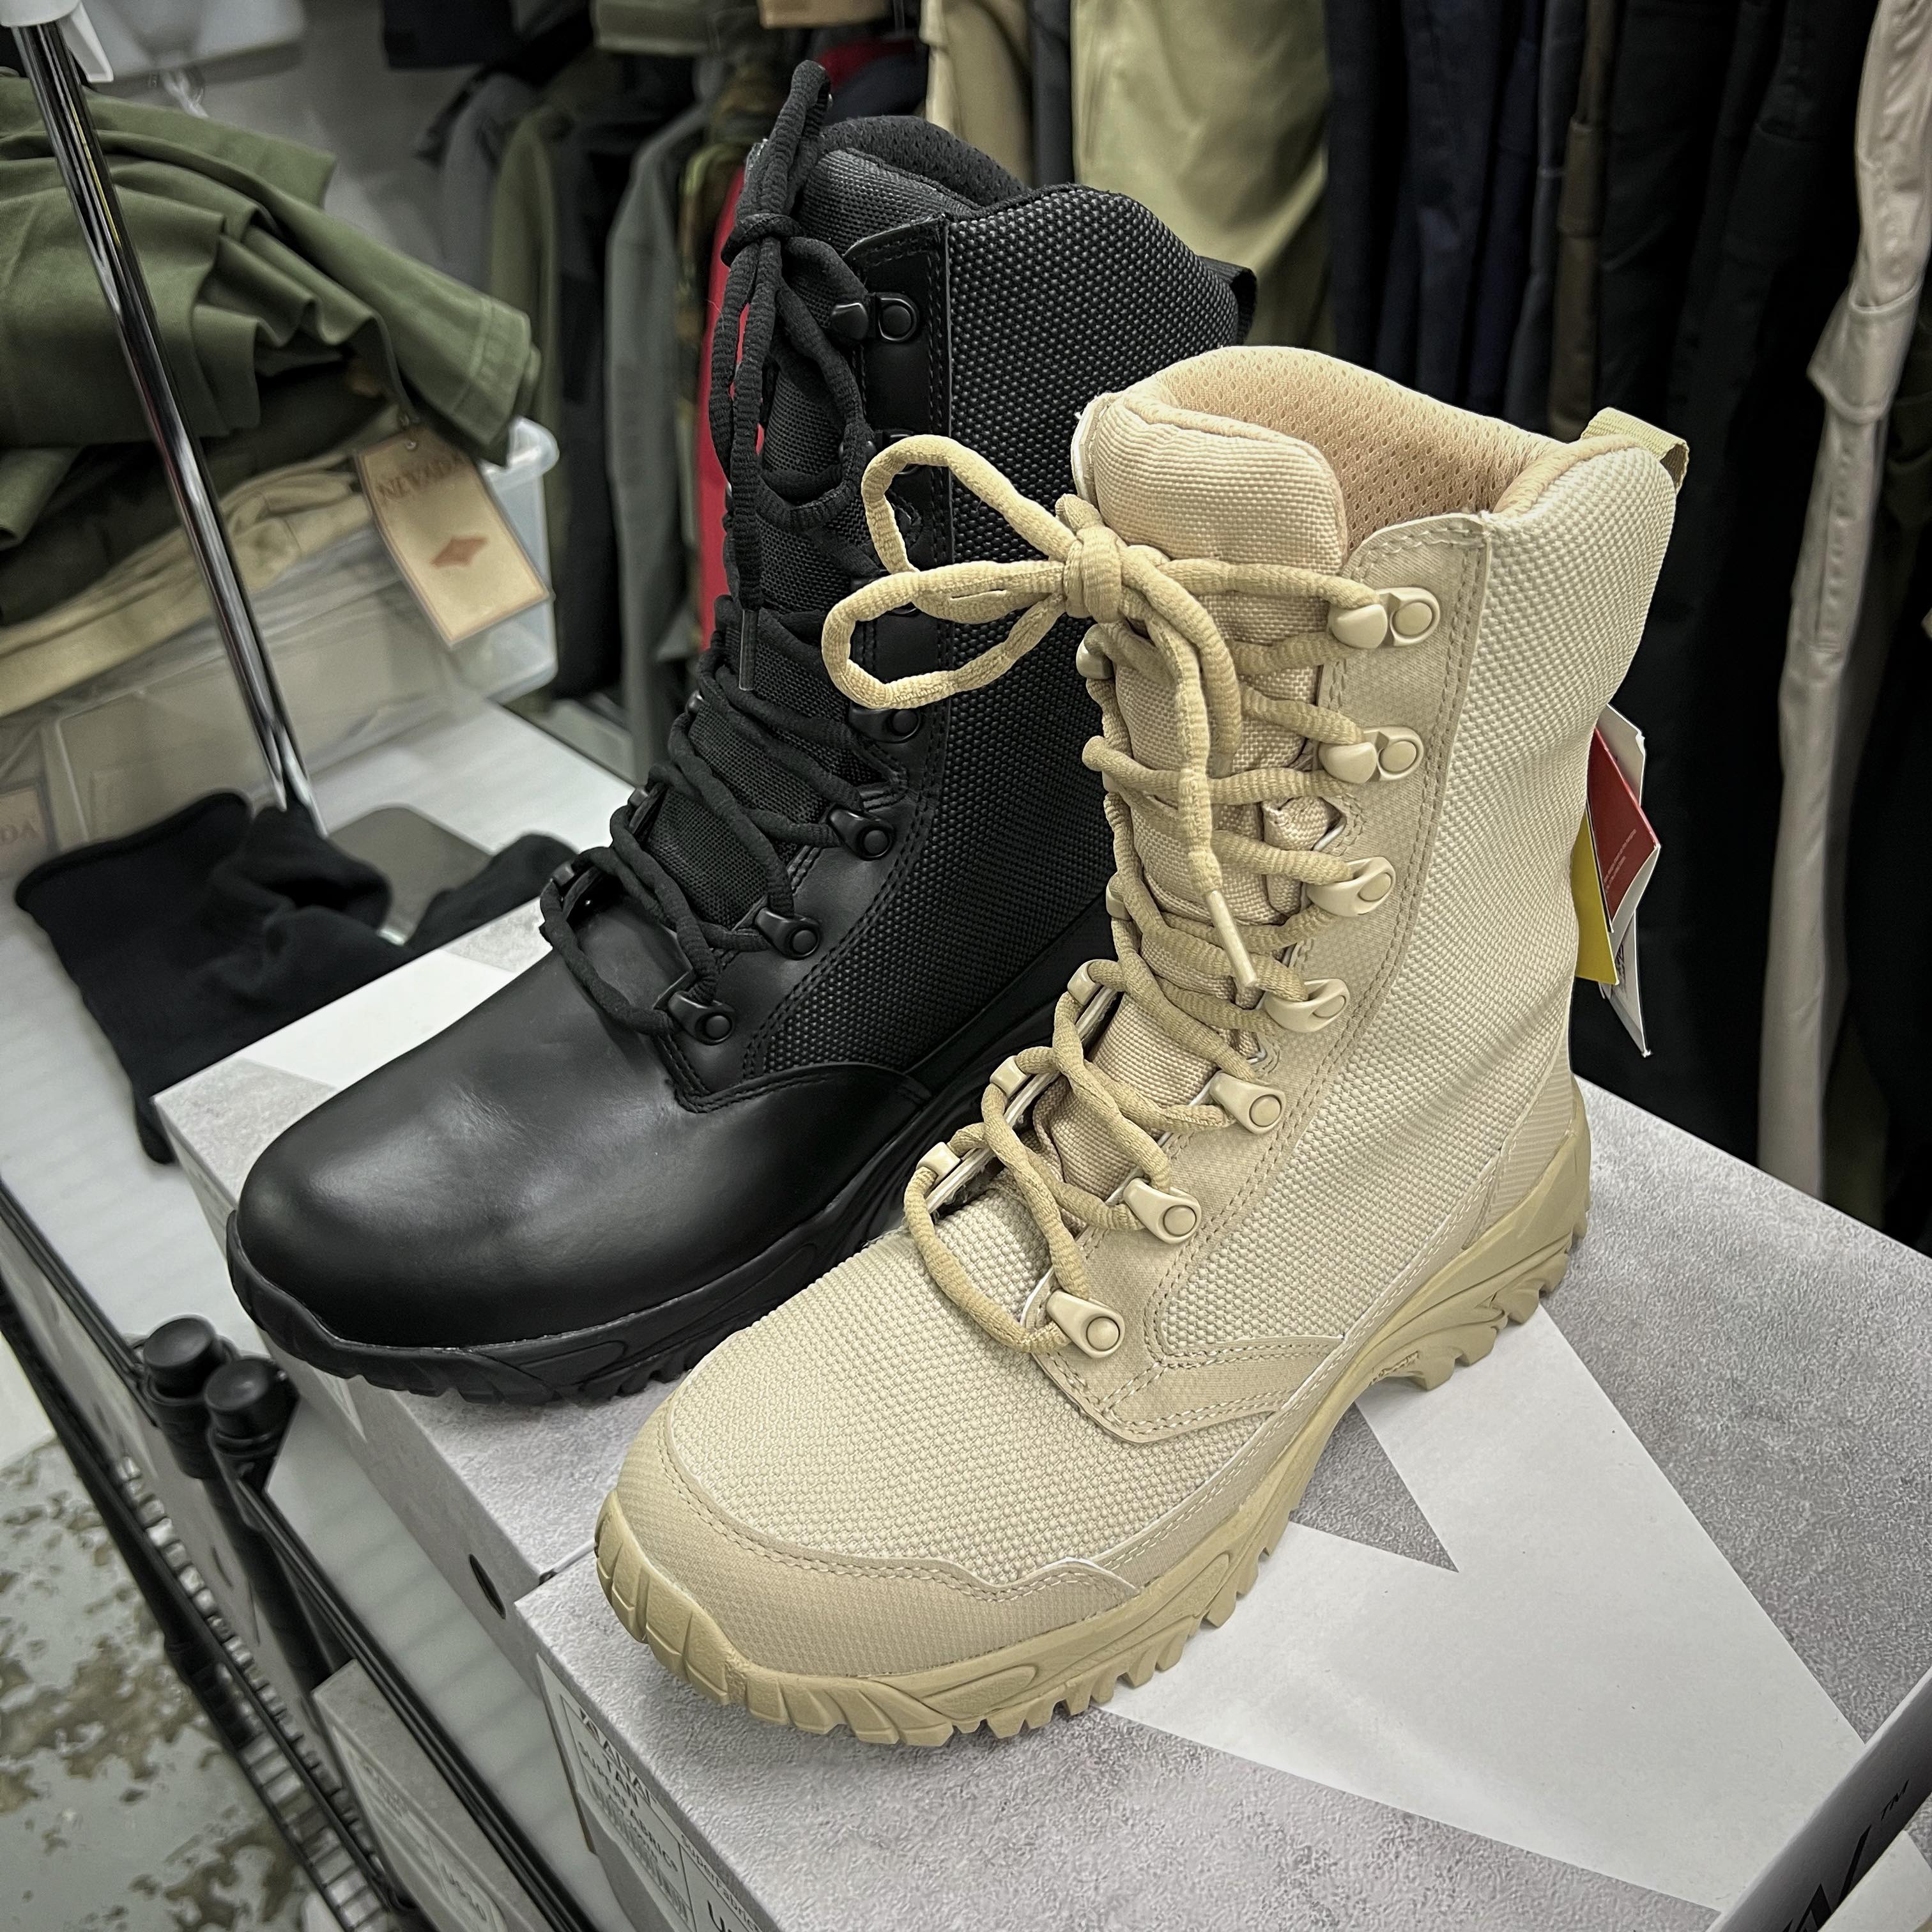 Altai - NZ Super Fabric Tactical Boots 8" (NO WARRANTY)